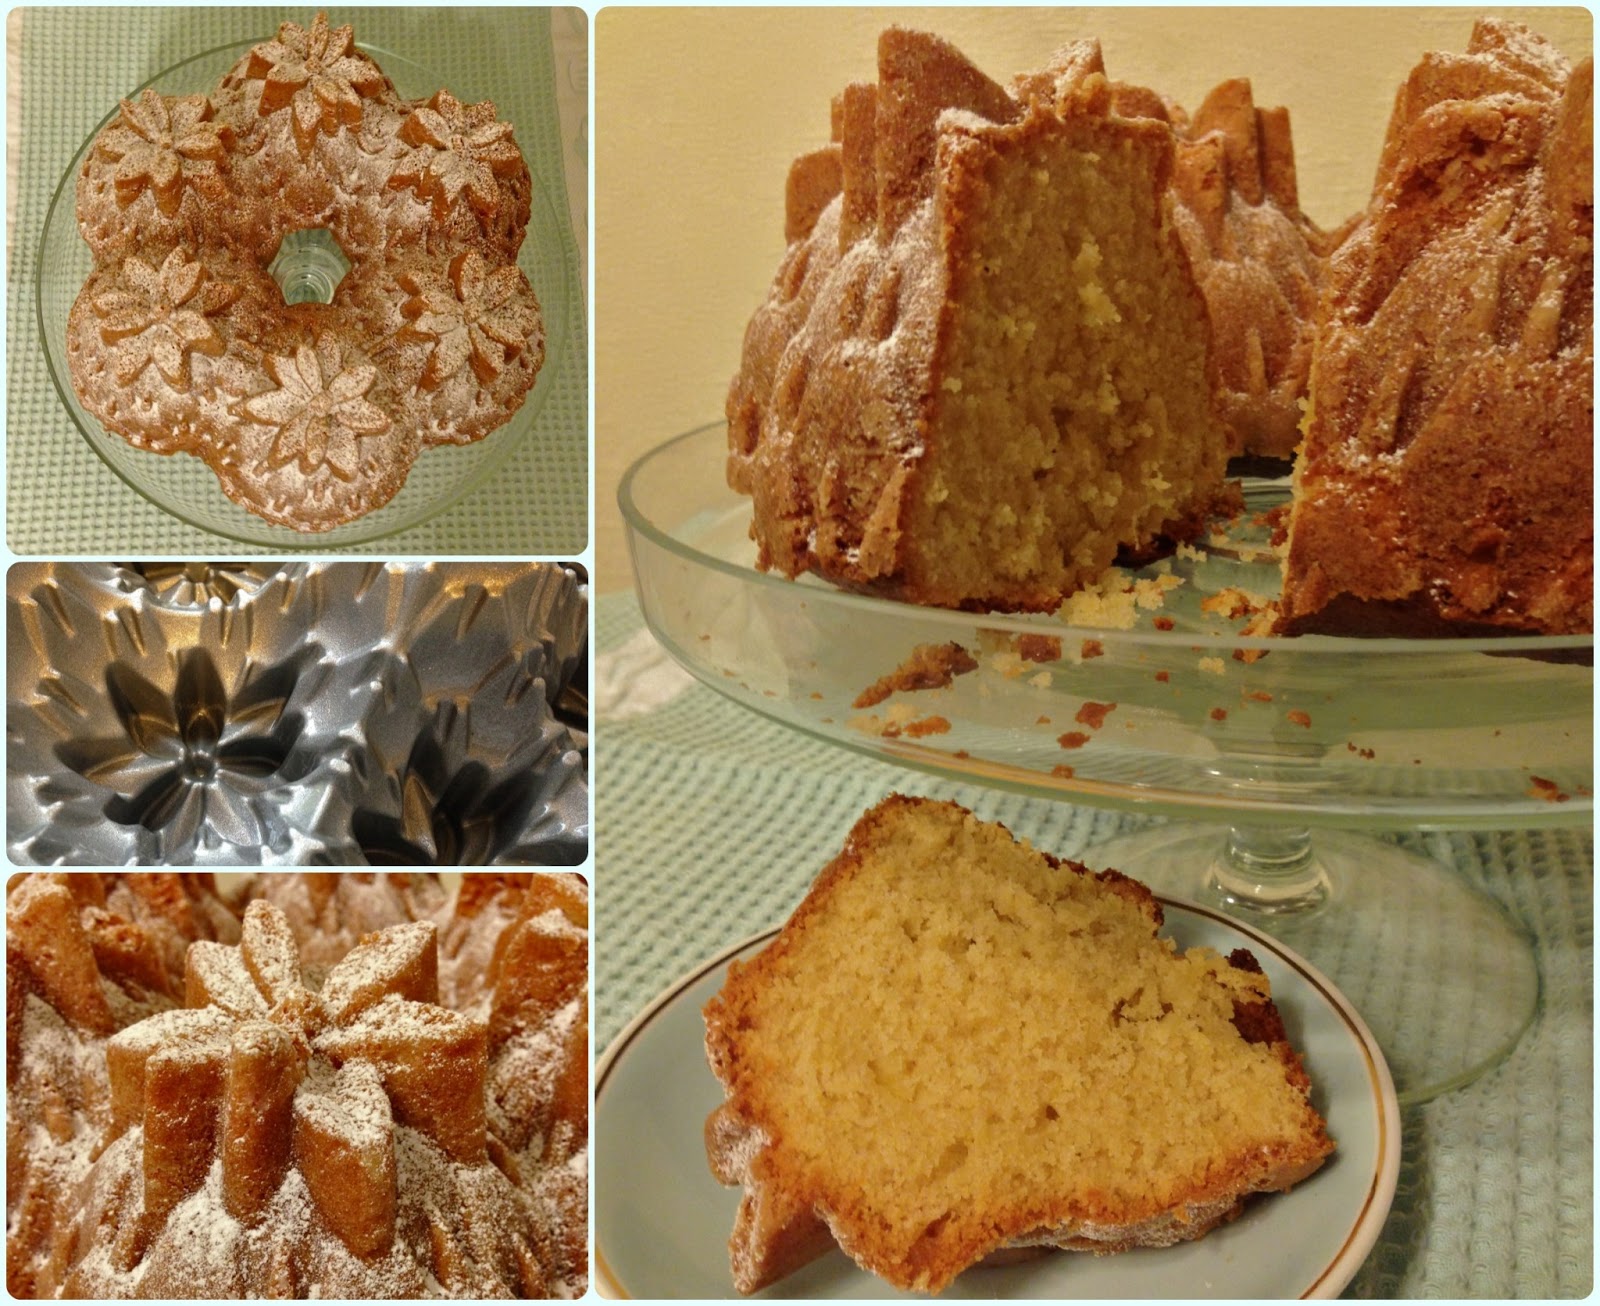 Pineapple Bundt Cake | Dollybakes